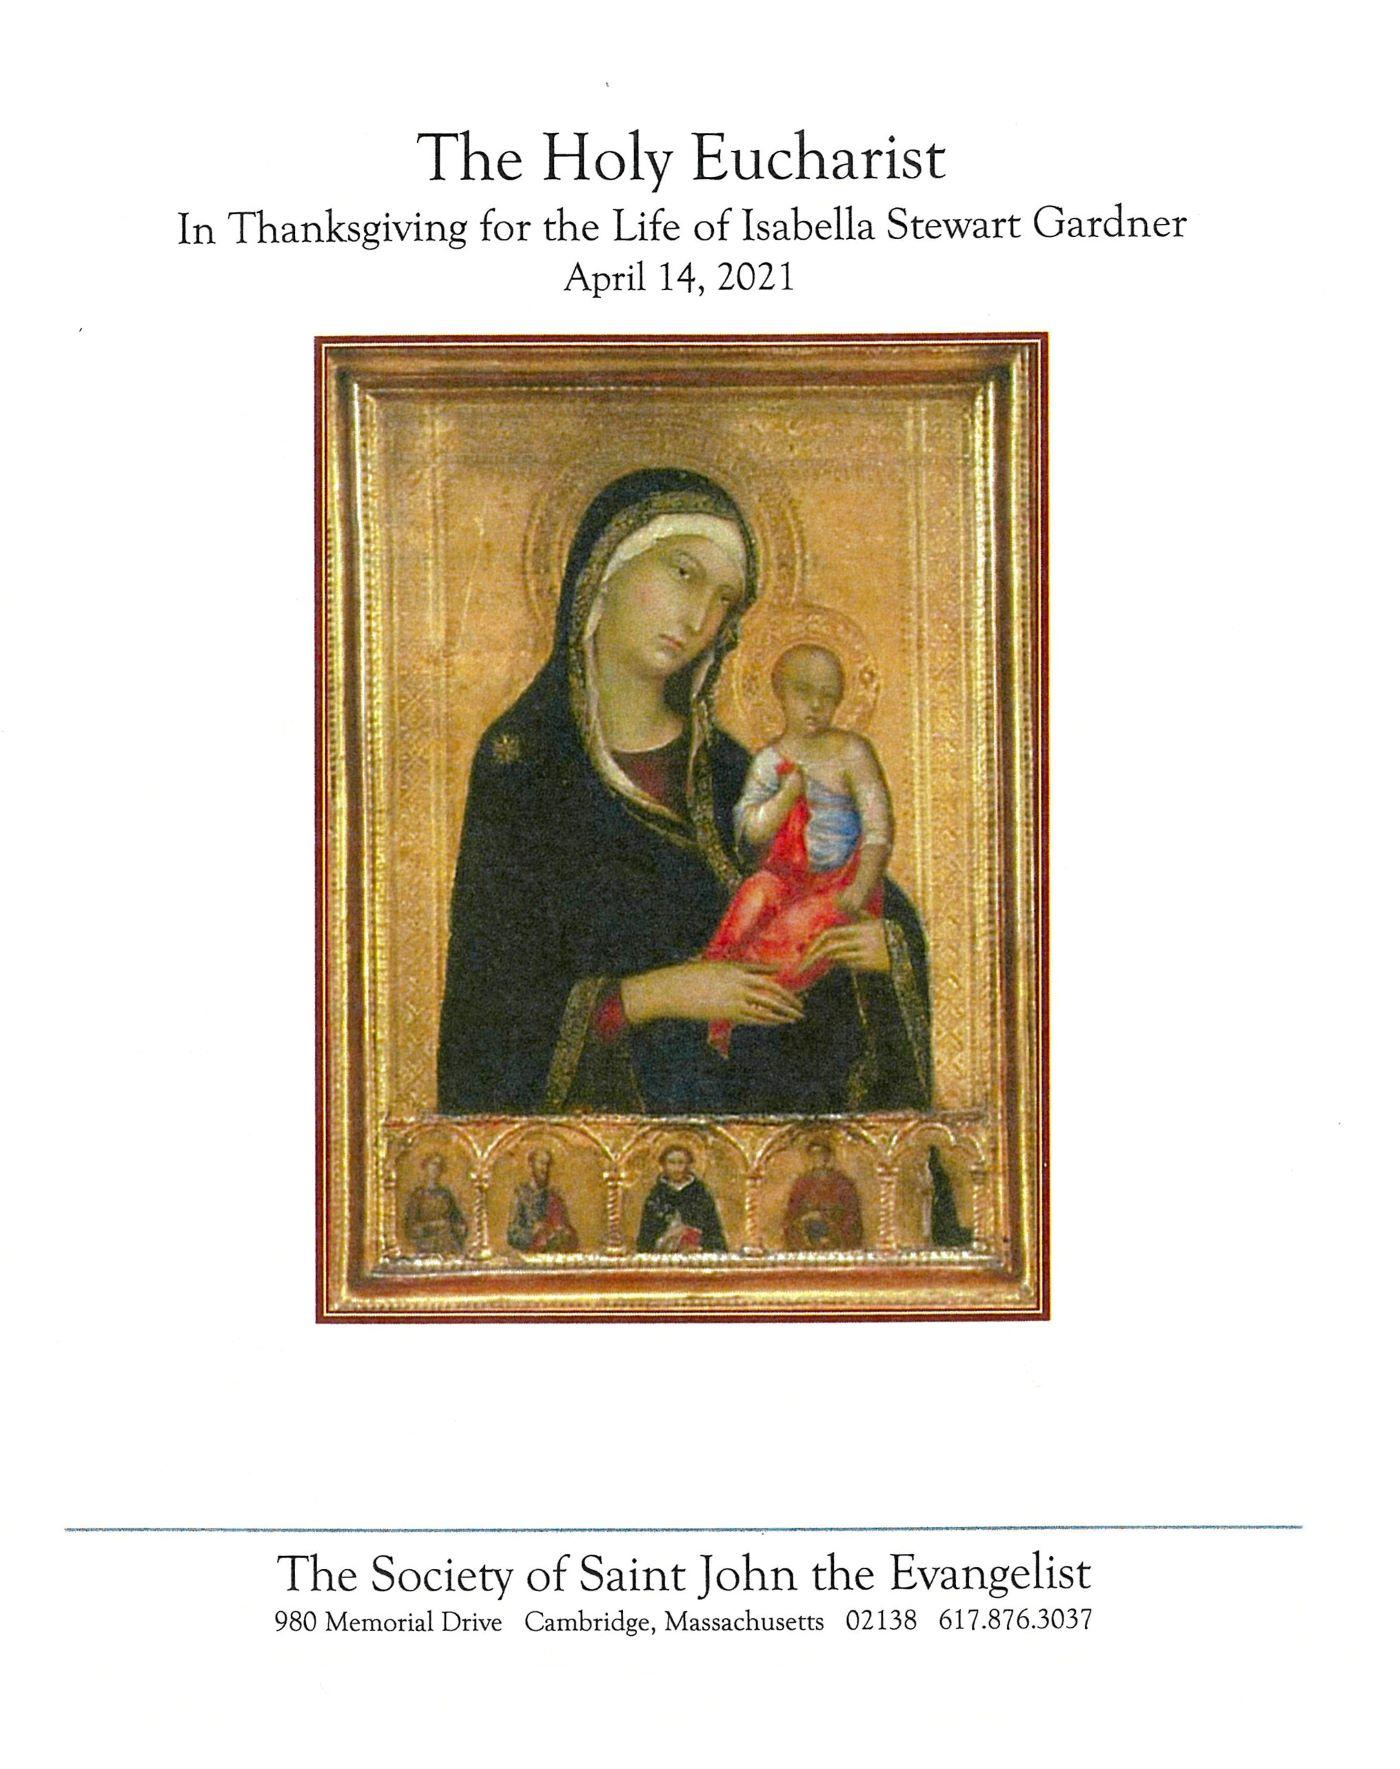 The Society of Saint John the Evangelist program cover